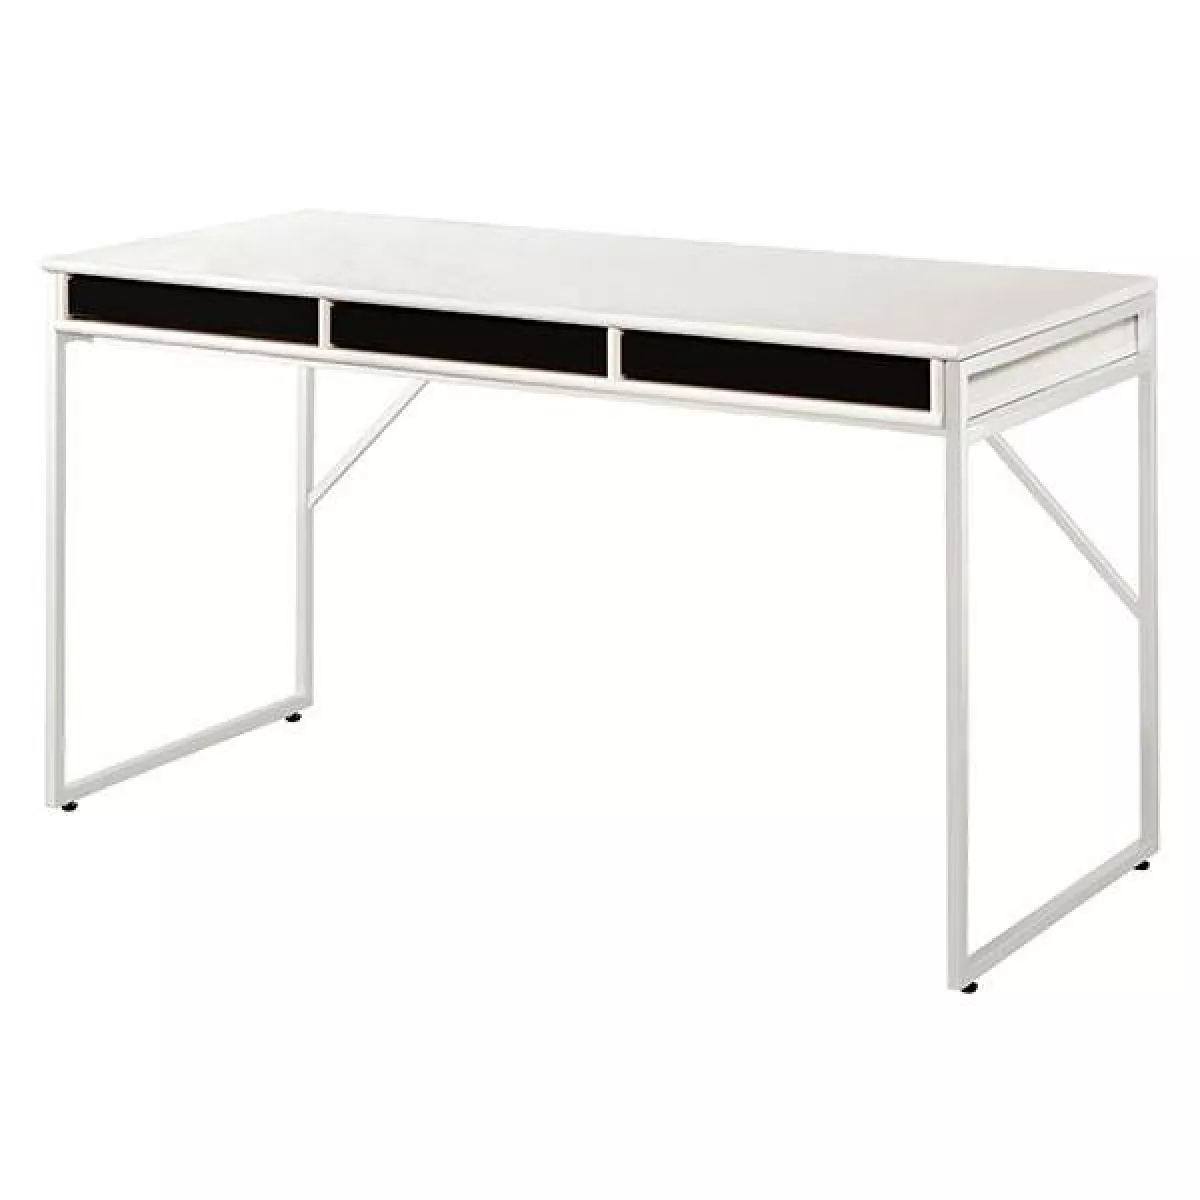 #2 - Mistral skrivebord med 3 skuffer - Hvid m. skuffer i sortbejdset